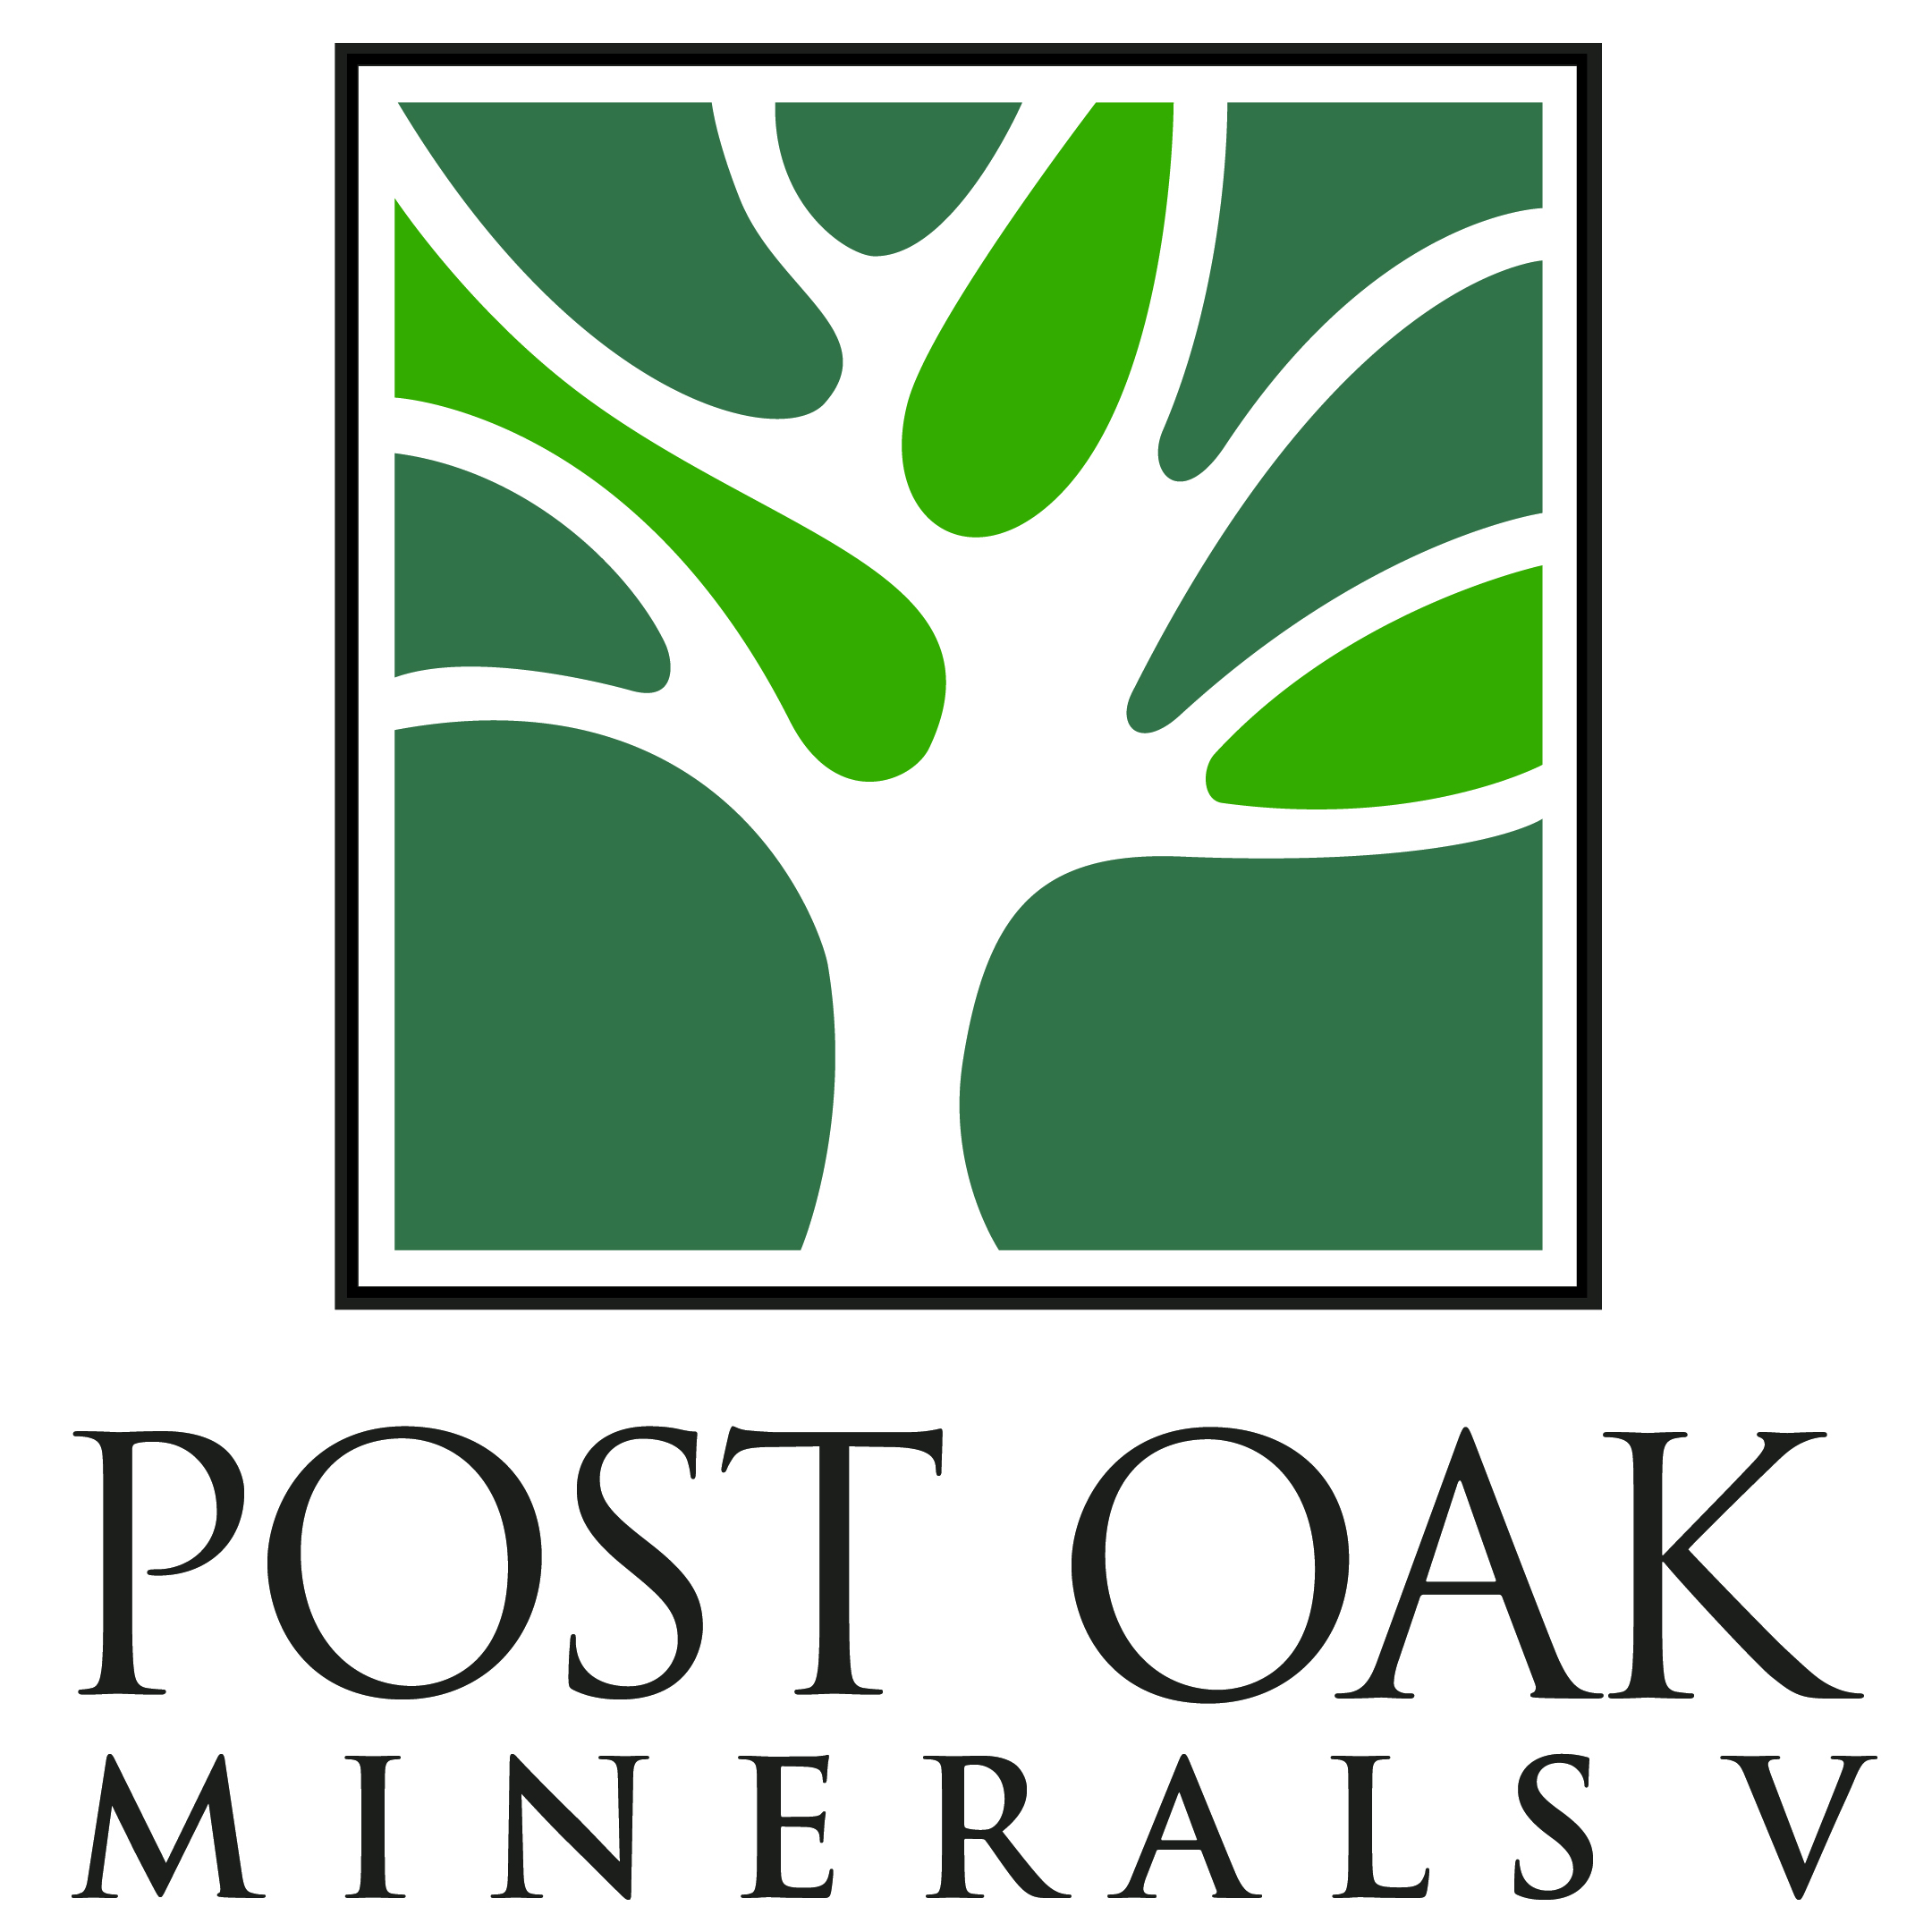 Post Oak Minerals V